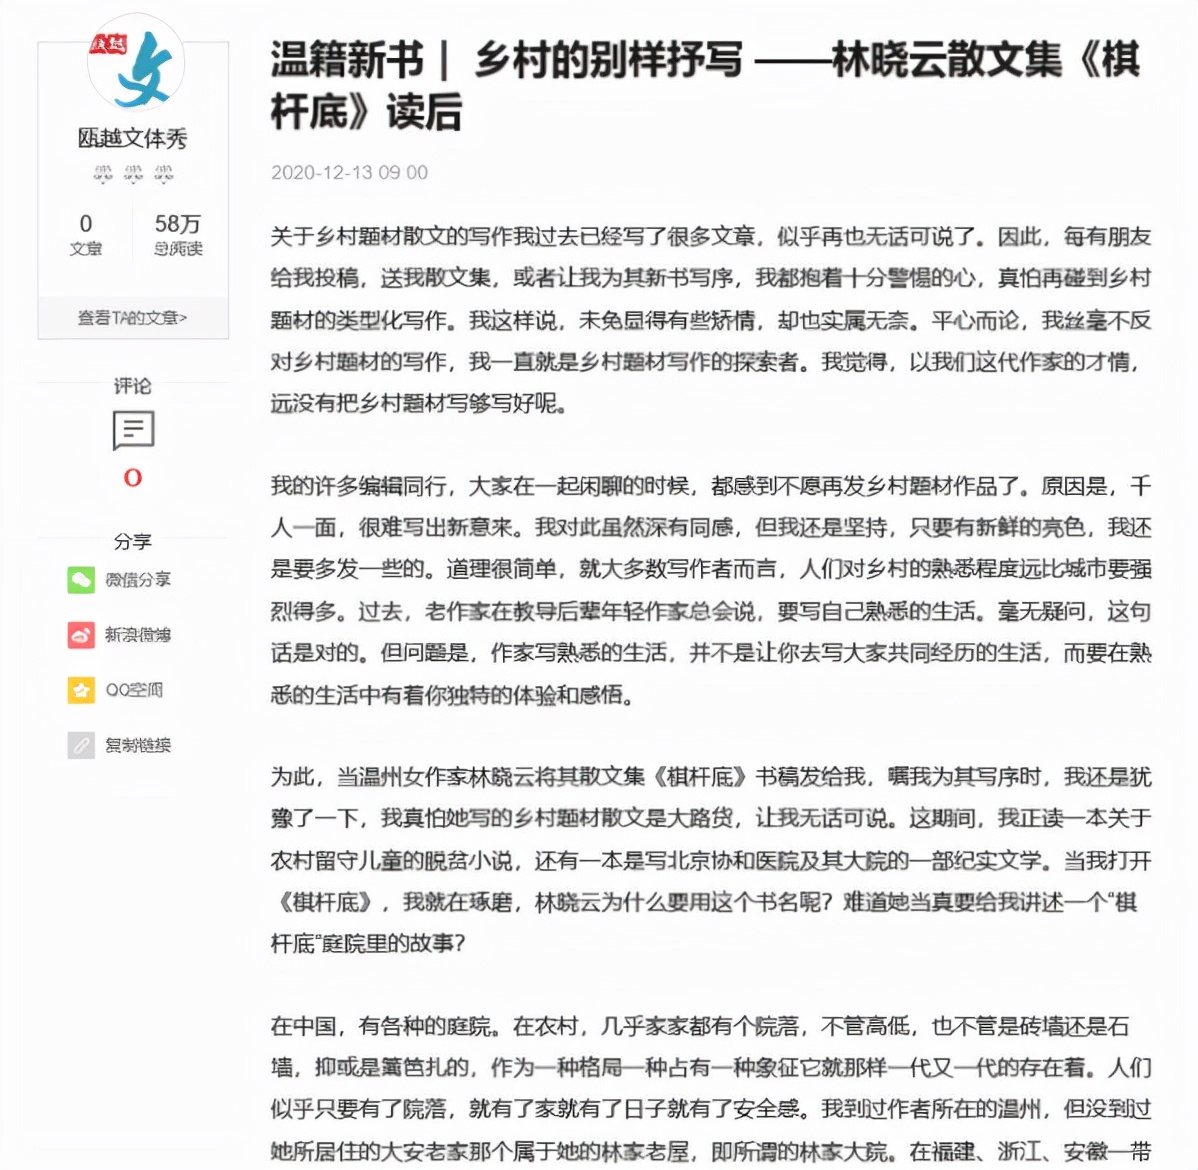 知名青年作家林晓云新书出版并加盟中国新闻传媒集团